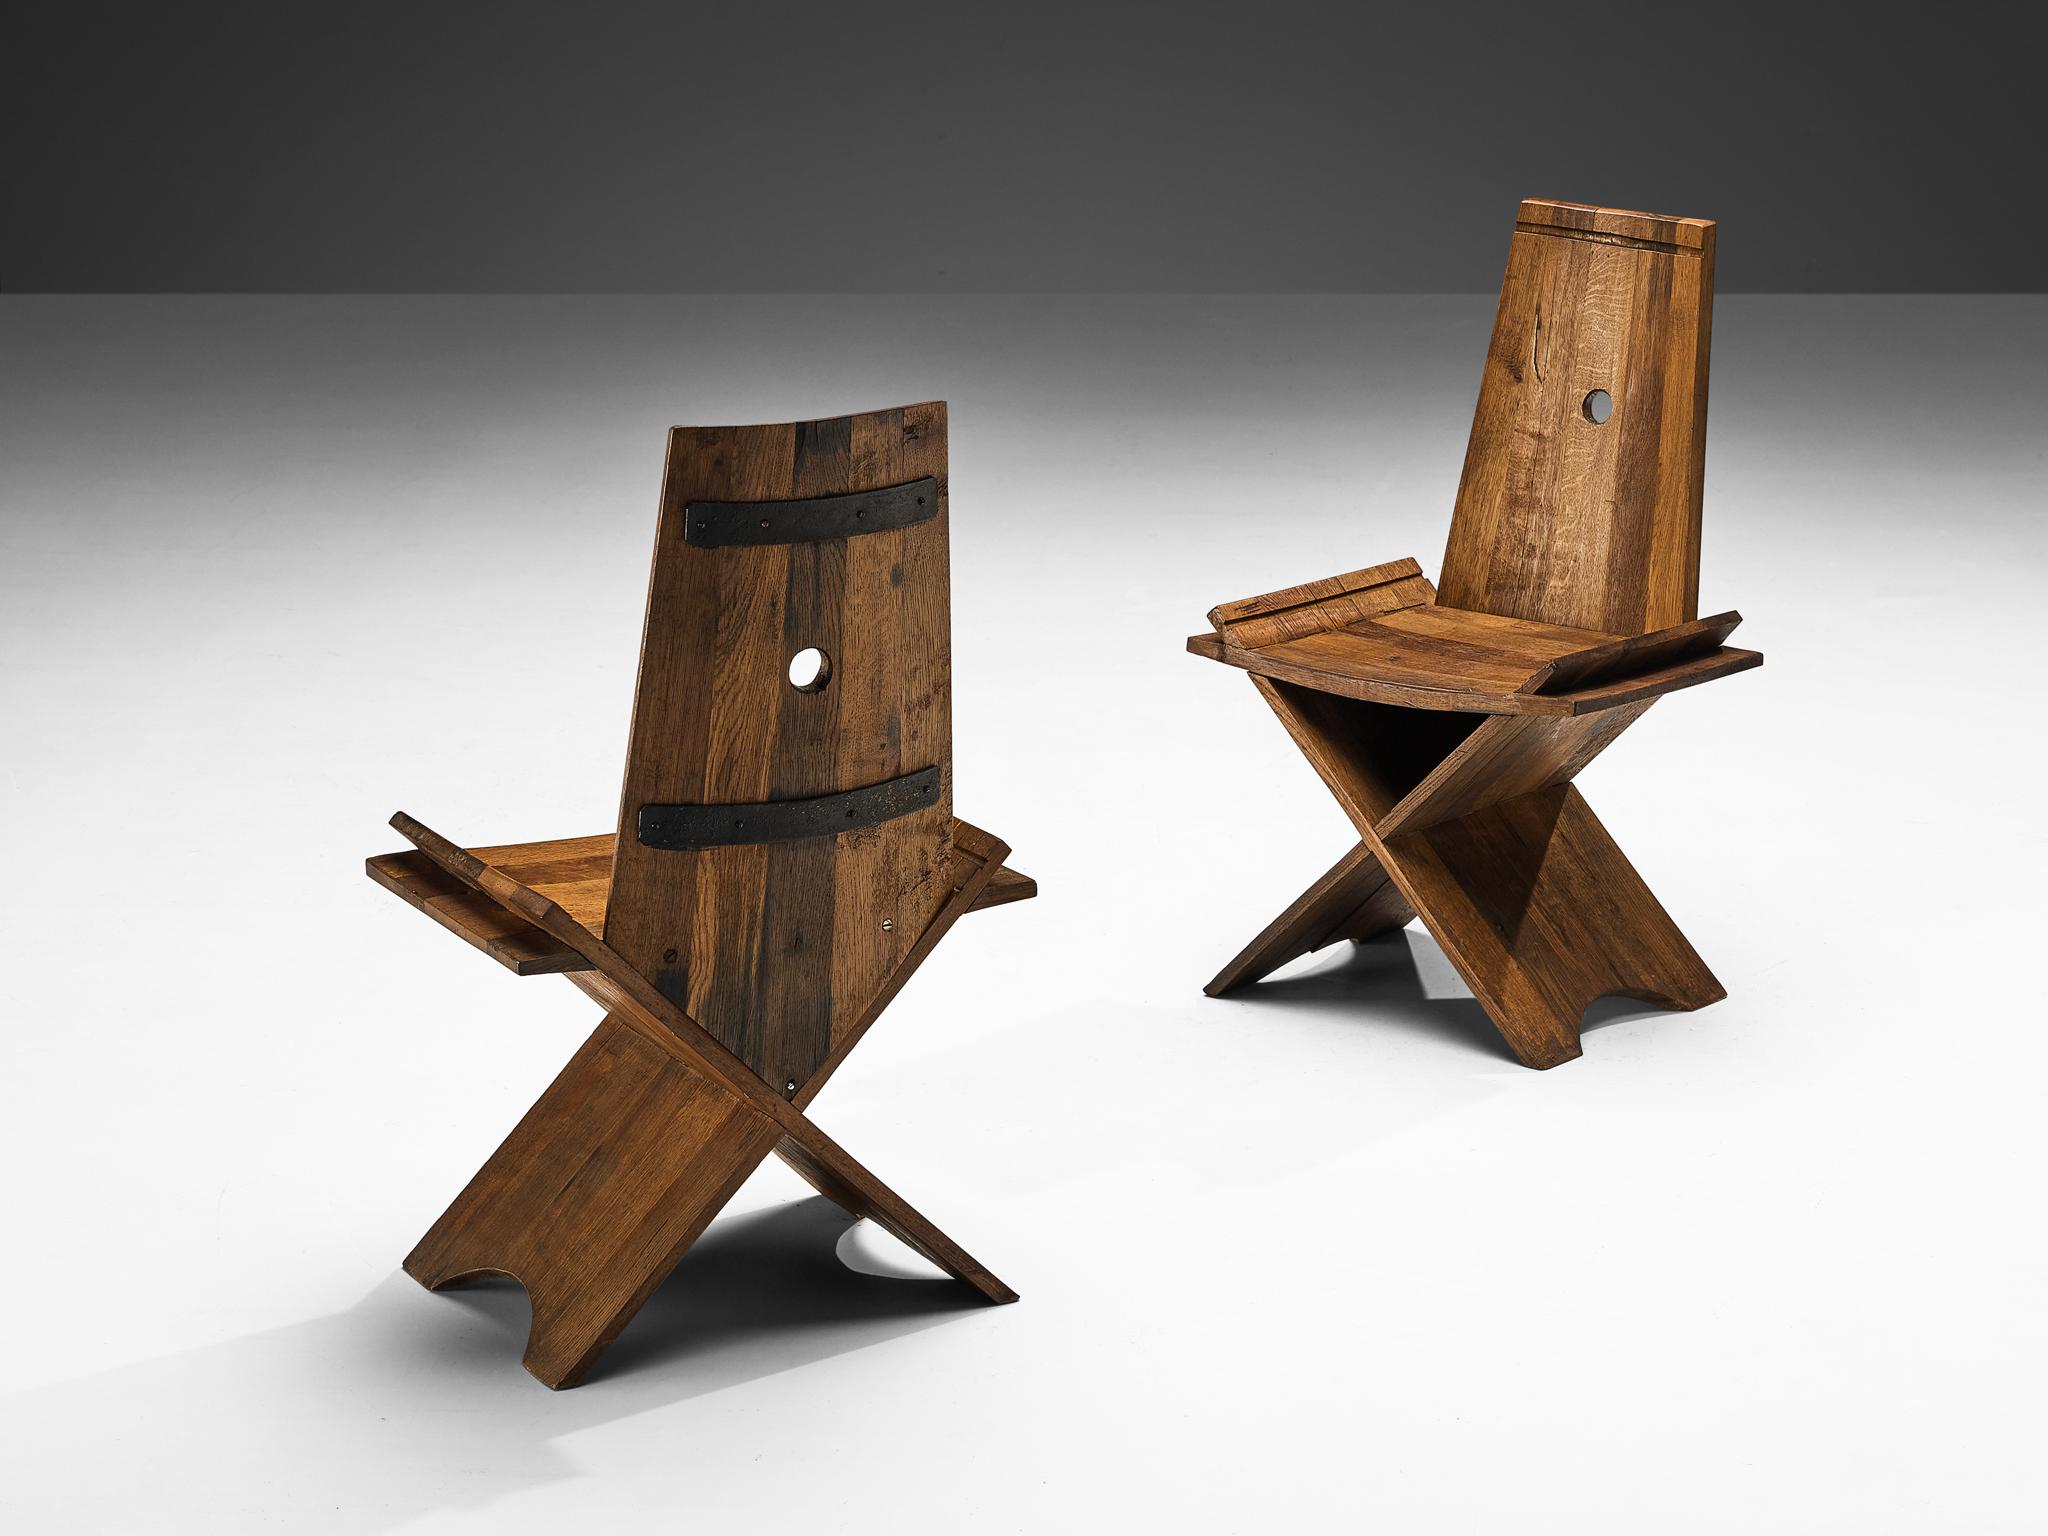 Paar Esszimmerstühle, Eiche, Eisen, Europa, 1970er Jahre

Diese Stühle sind ein Beispiel für eine harmonische Synthese, bei der die Robustheit des brutalistischen Stils nahtlos mit der schlichten Einfachheit des rustikalen Designs verschmilzt. Die